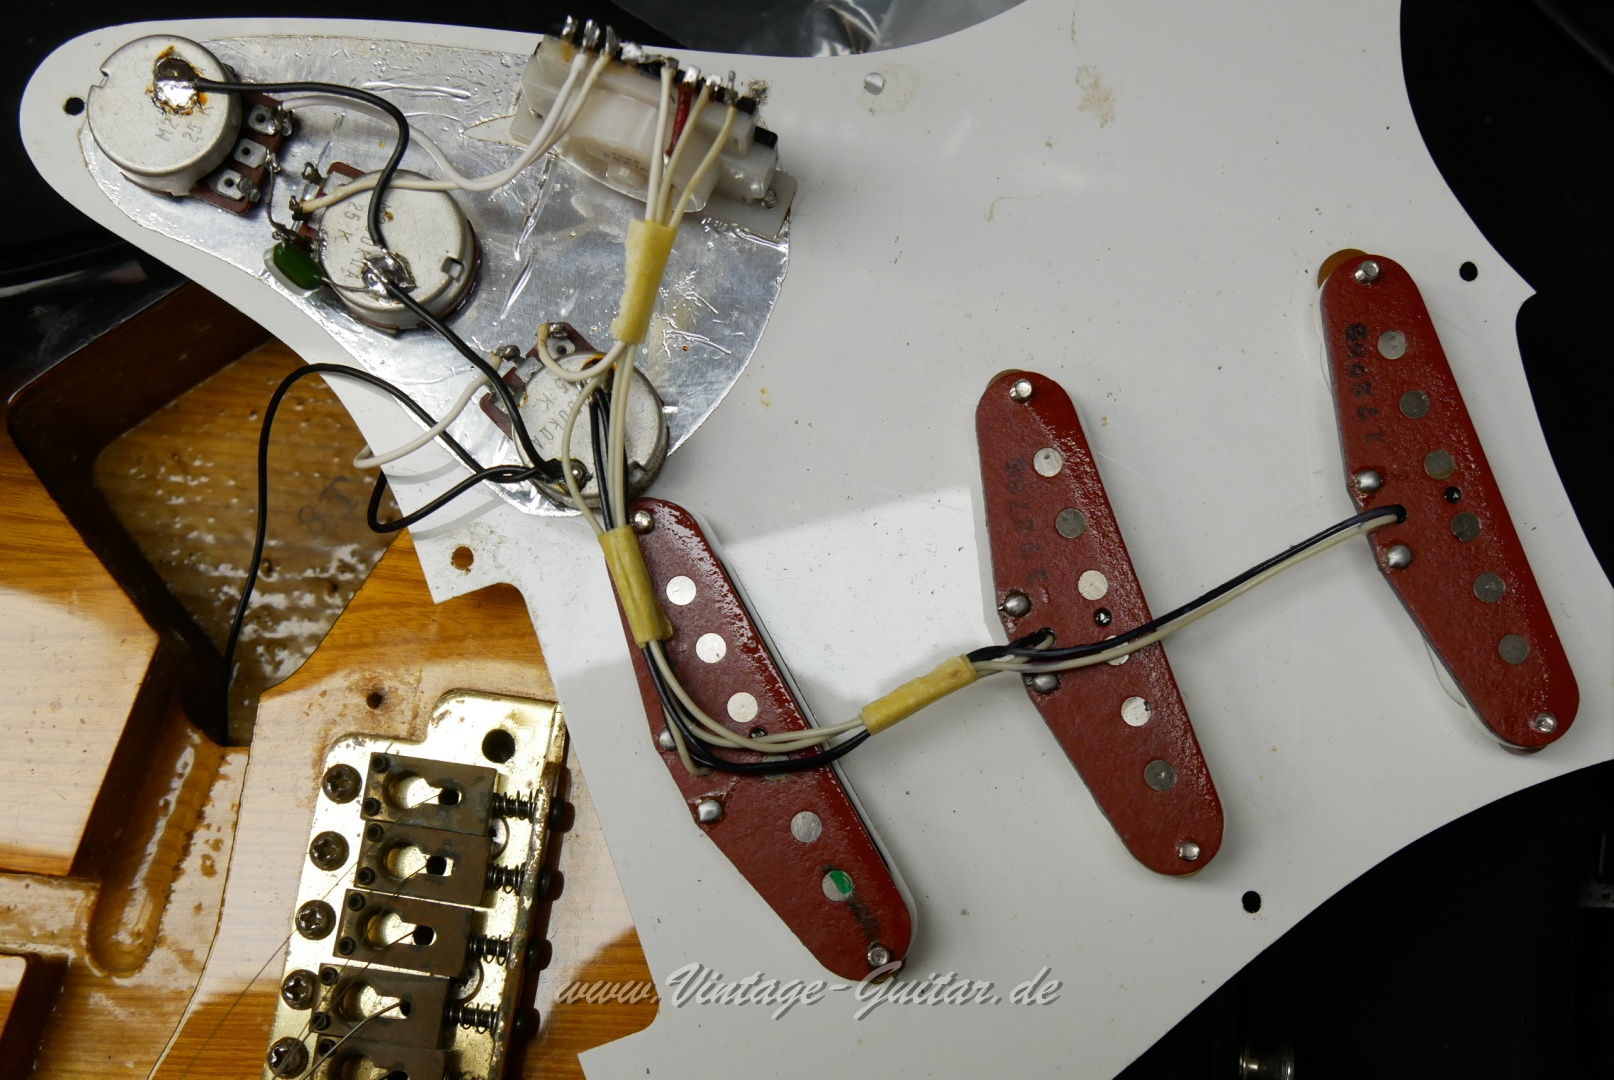 Fender-Squier-Stratocaster-1982-red-bottom-pickups-020.JPG